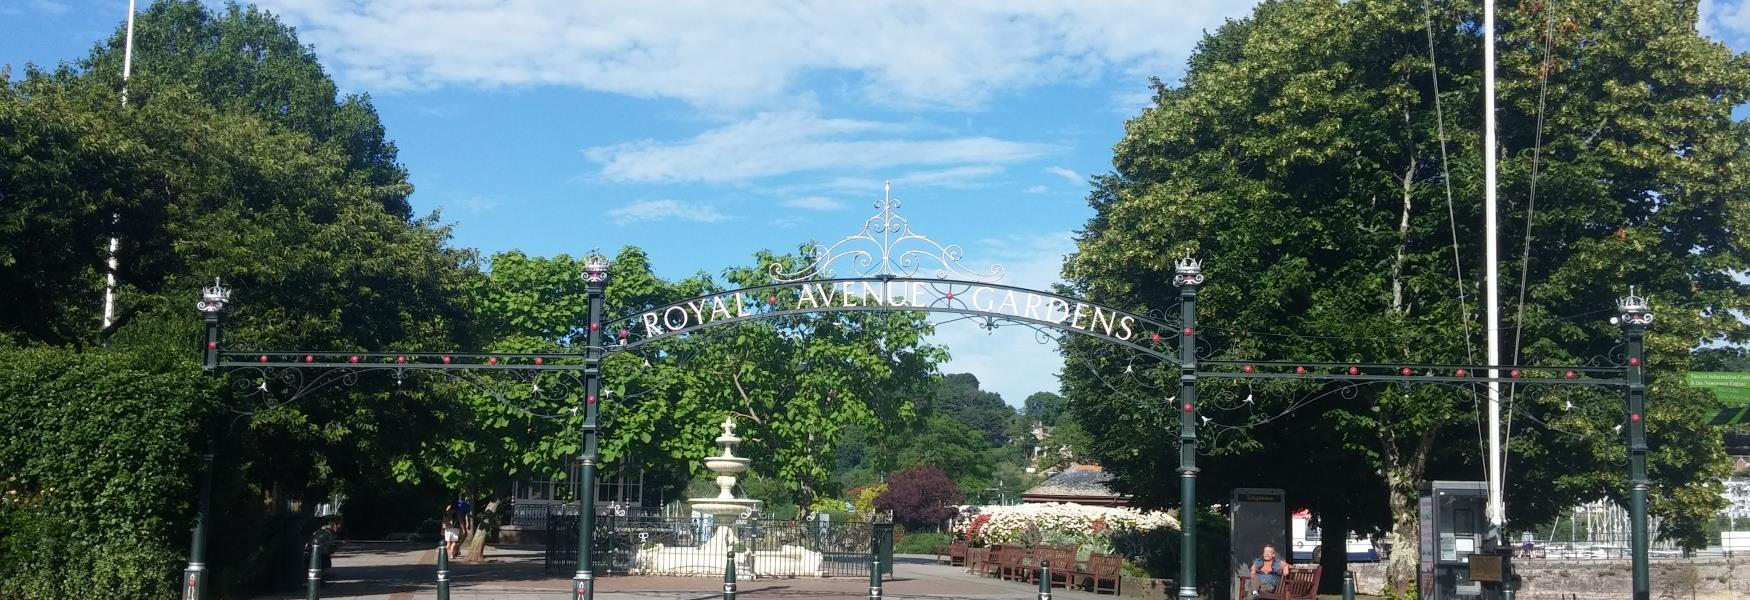 Royal Avenue Gardens Dartmouth